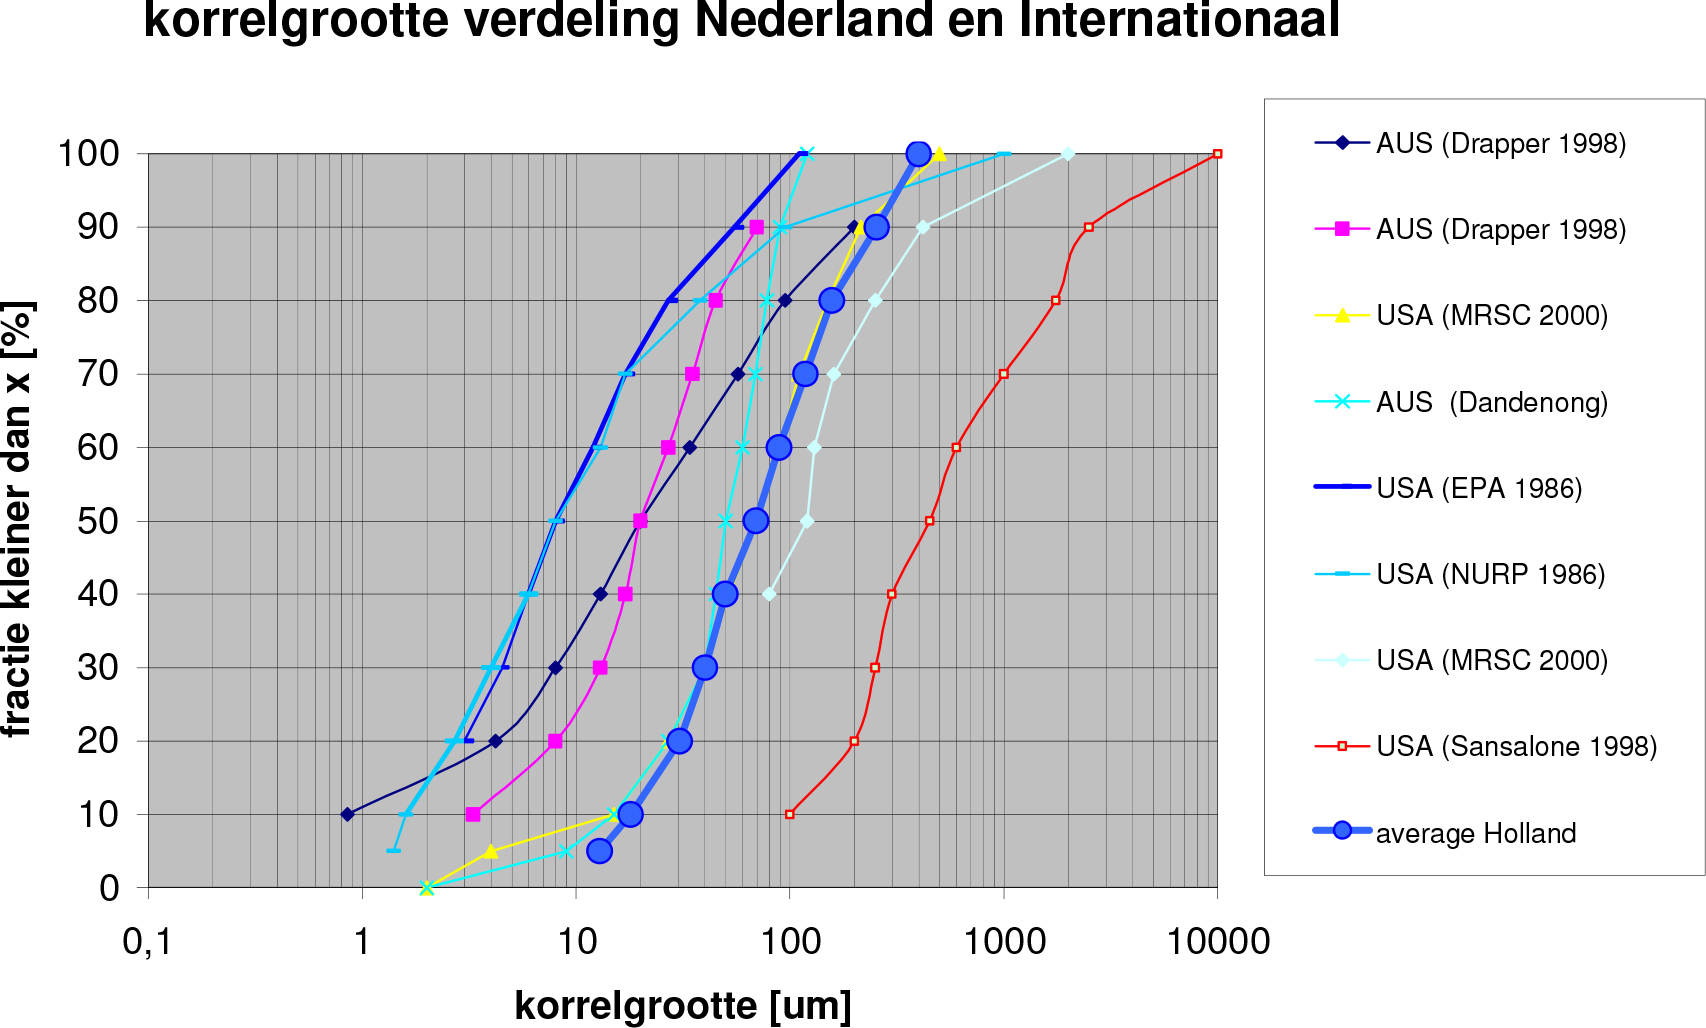 De gemiddelde vuilconcentraties voor Nederland en internationaal (tevens gemiddelde van tientallen metingen per stof) liggen wel in dezelfde orde van grootte.